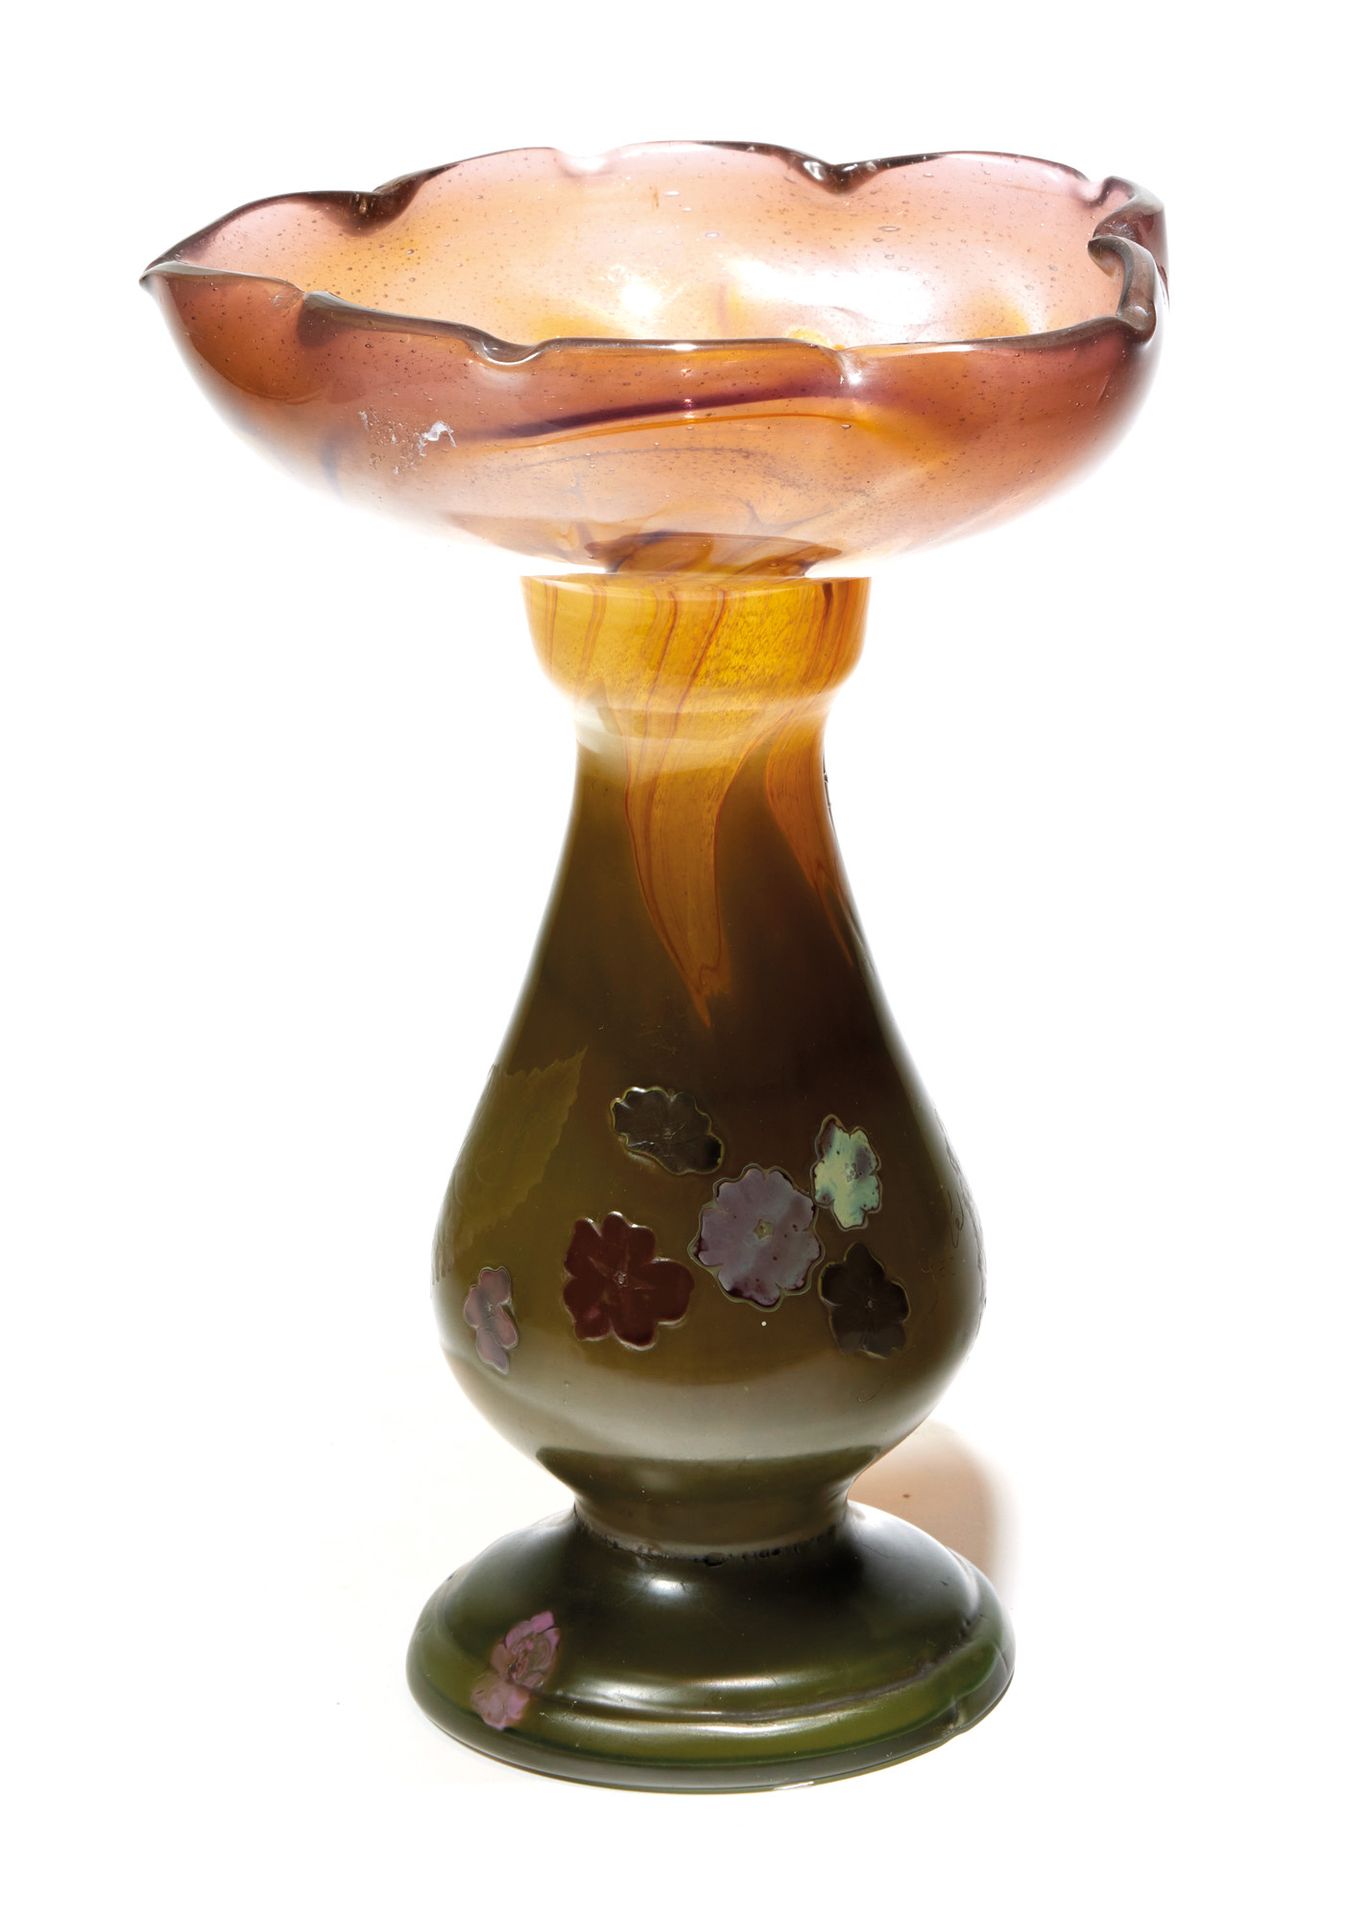 Émile GALLÉ (1846-1904) 埃米尔-加莱(1846-1904)

多层玻璃的宽颈芭蕾花瓶，在绿色和棕色的背景上刻有车轮和镶嵌着粉色、红色和黄&hellip;